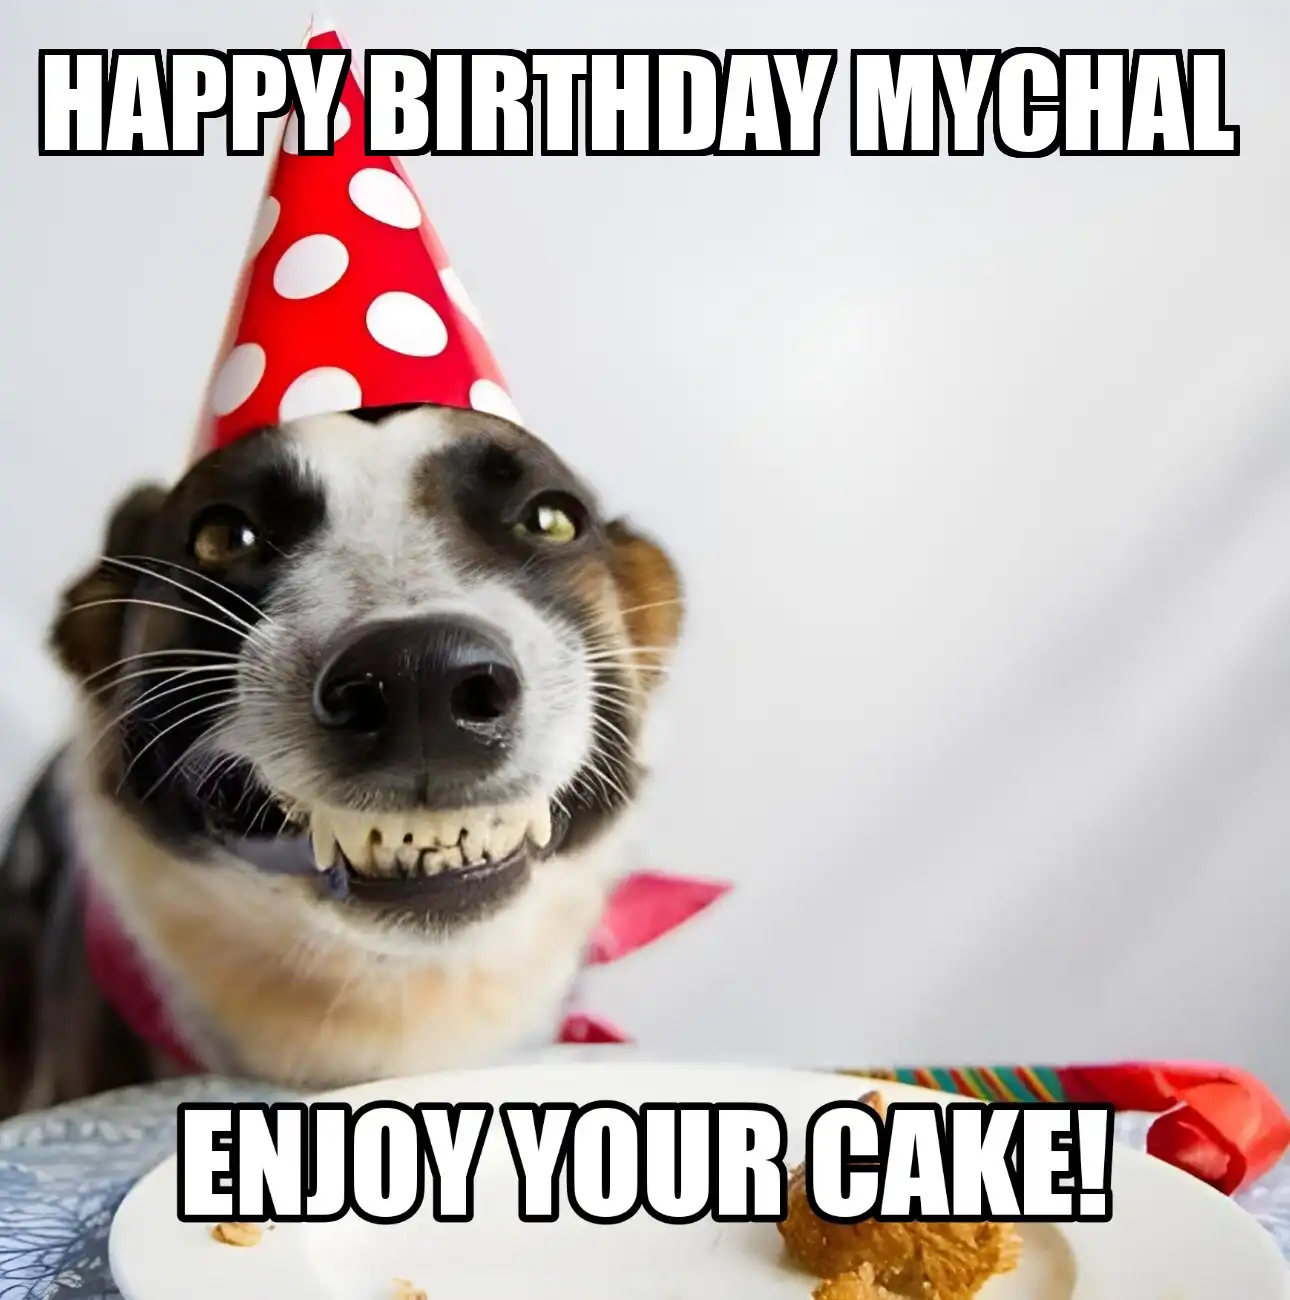 Happy Birthday Mychal Enjoy Your Cake Dog Meme